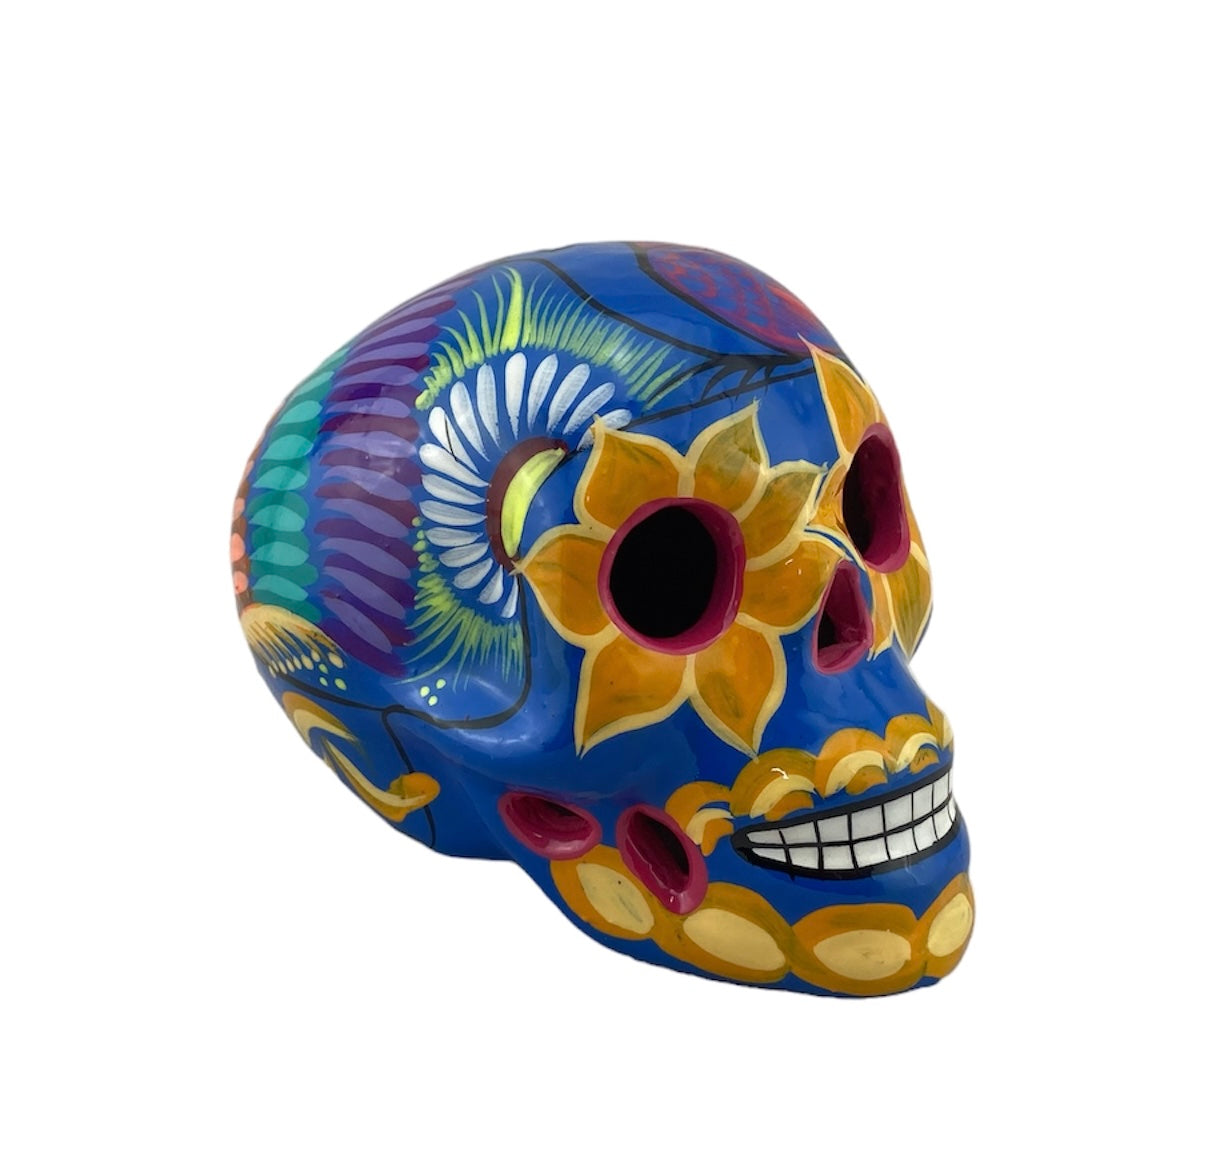 Calavera colored ceramic Skull Large 14cm-19cm